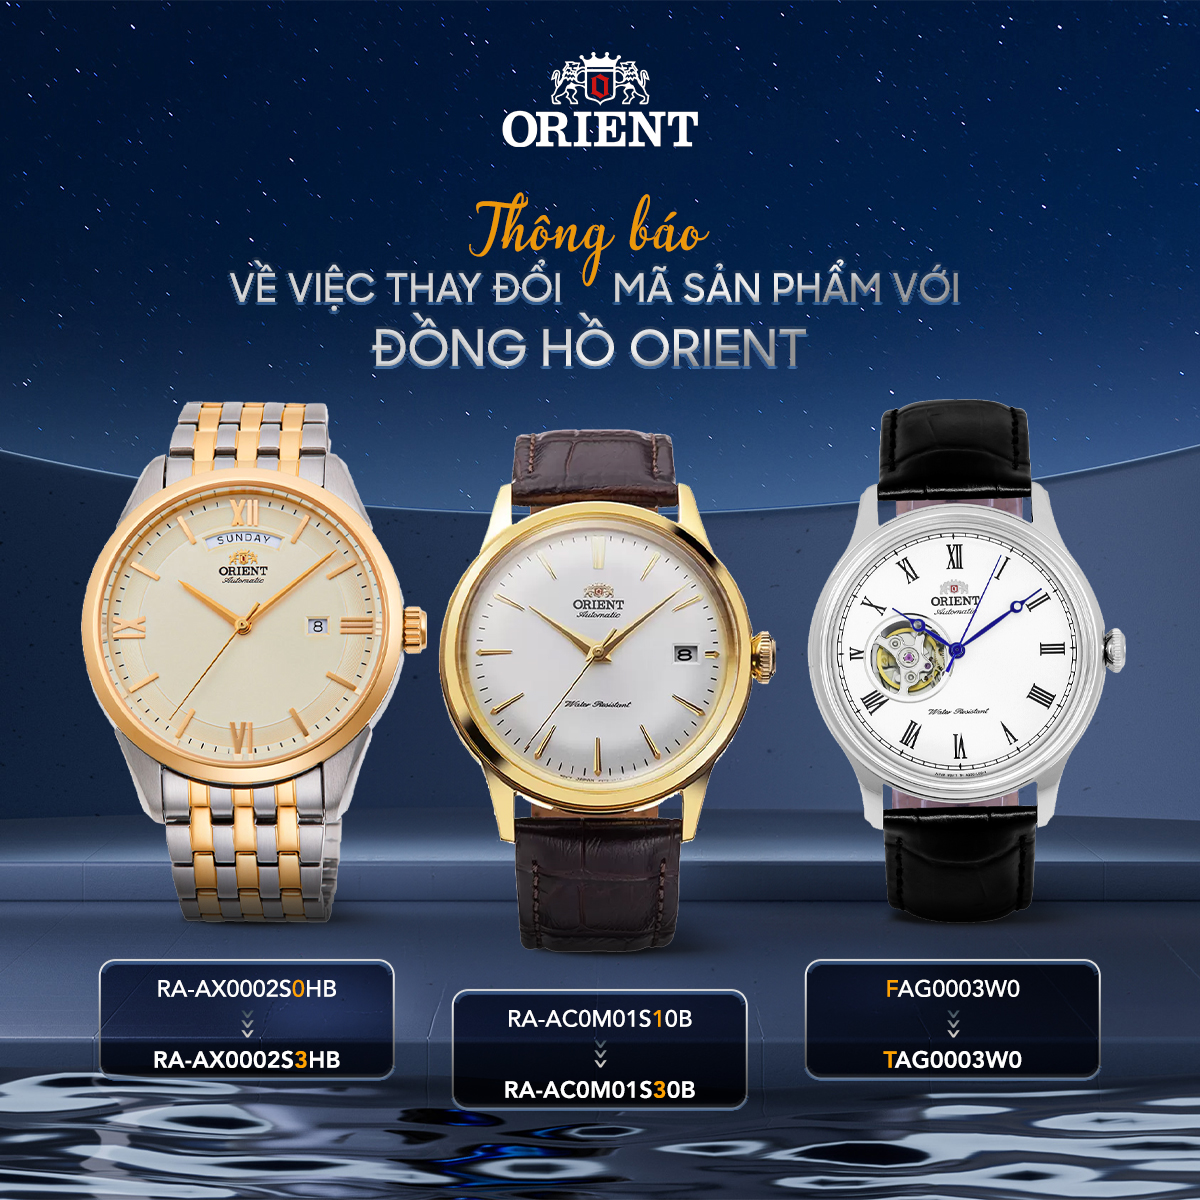 Thay đổi mã sản phẩm đối với  thương hiệu đồng hồ Orient